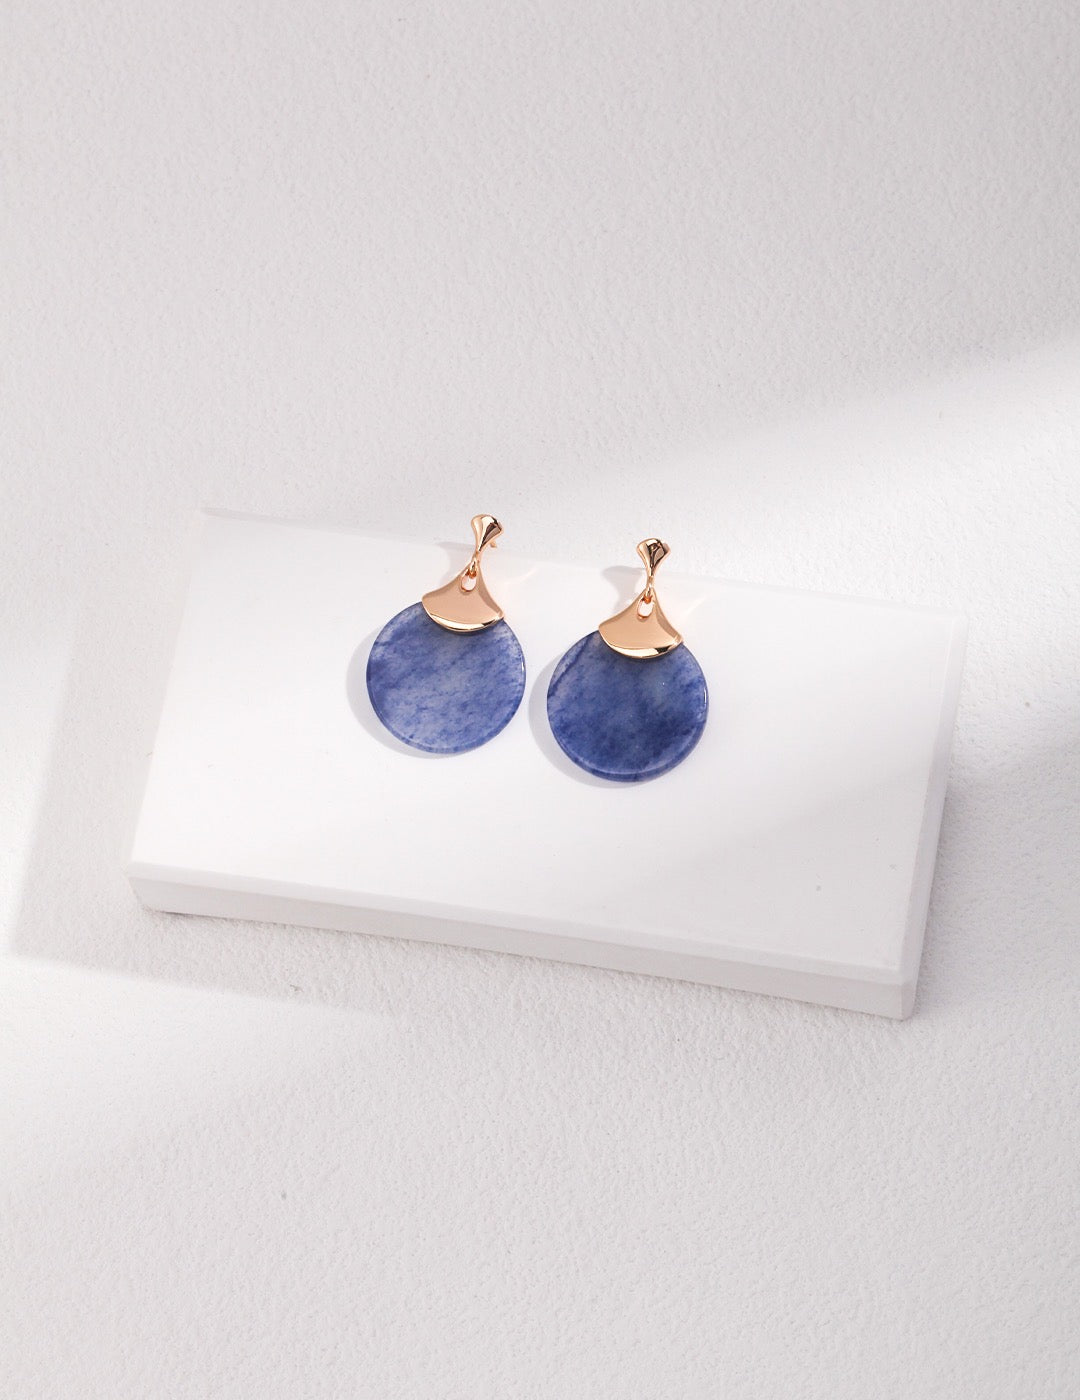 Blue Aventurine Earrings | Scalloped Blue Earrings | Silver Jewellery | Women's Earrings